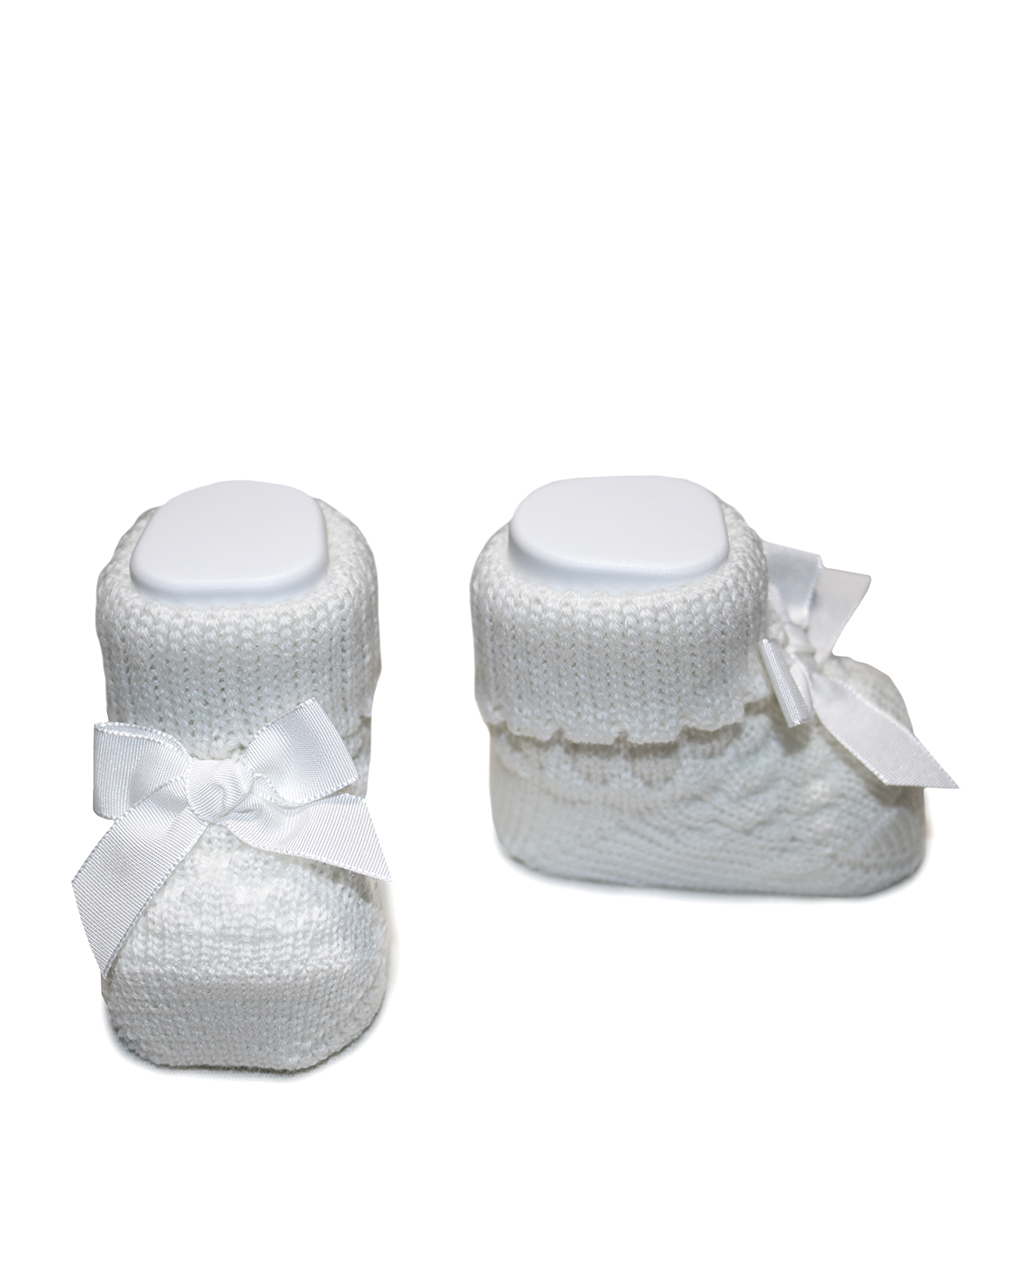 παπούτσια αγκαλιάς πλεκτά λευκά με φιογκάκι για κορίτσι - Prénatal